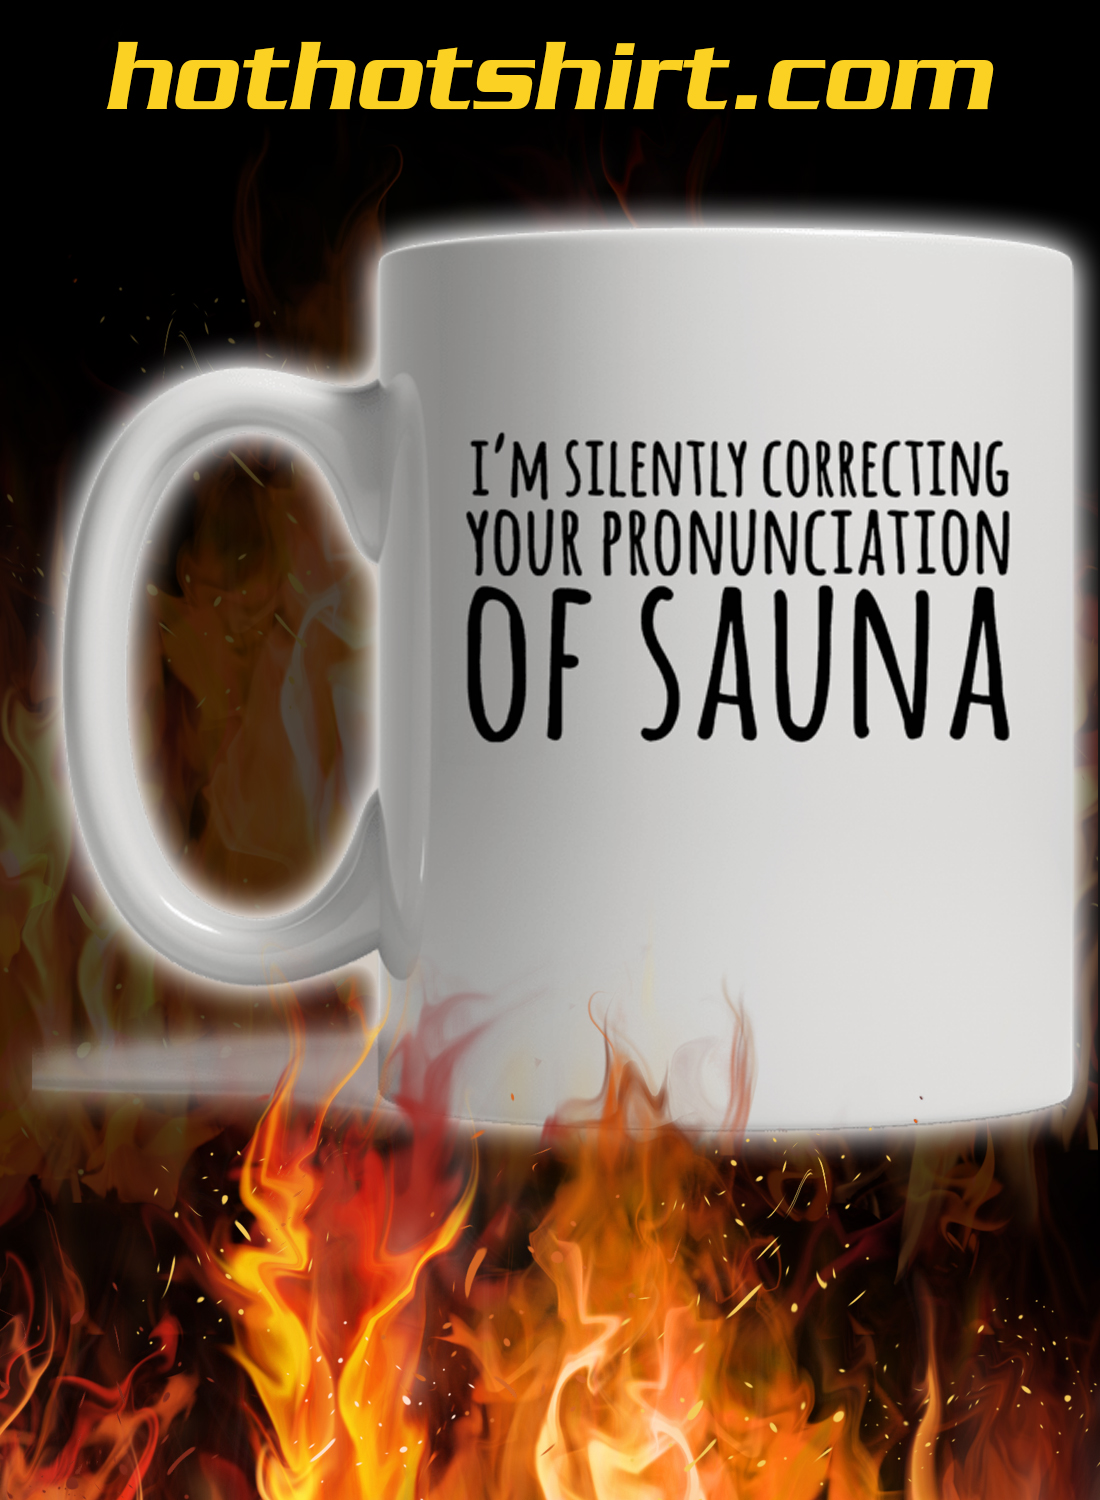 I’m silently correcting your proninciation of sauna mug